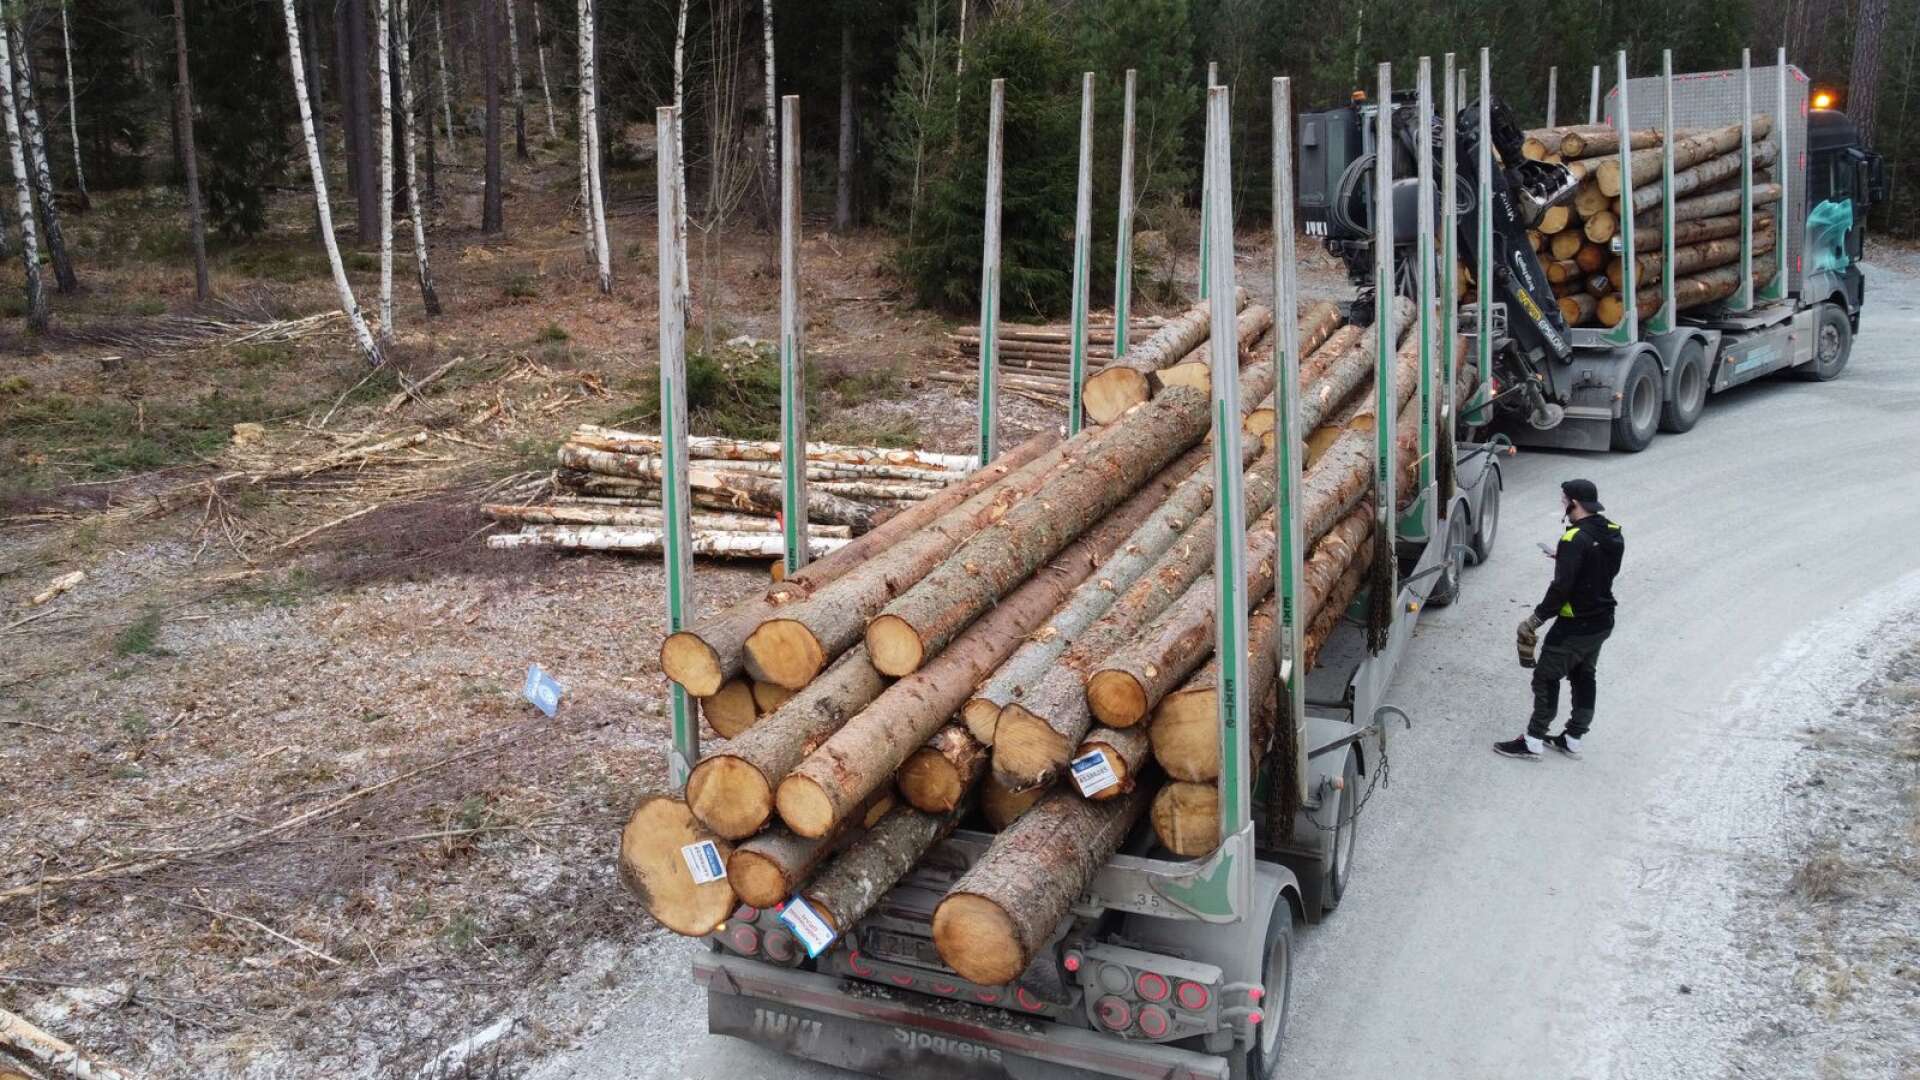 Skogsnäringen ger hundratusentals arbetsplatser och Sverige är världens näst största exportör av industriprodukter från skogen, skriver Charlie Weimers.